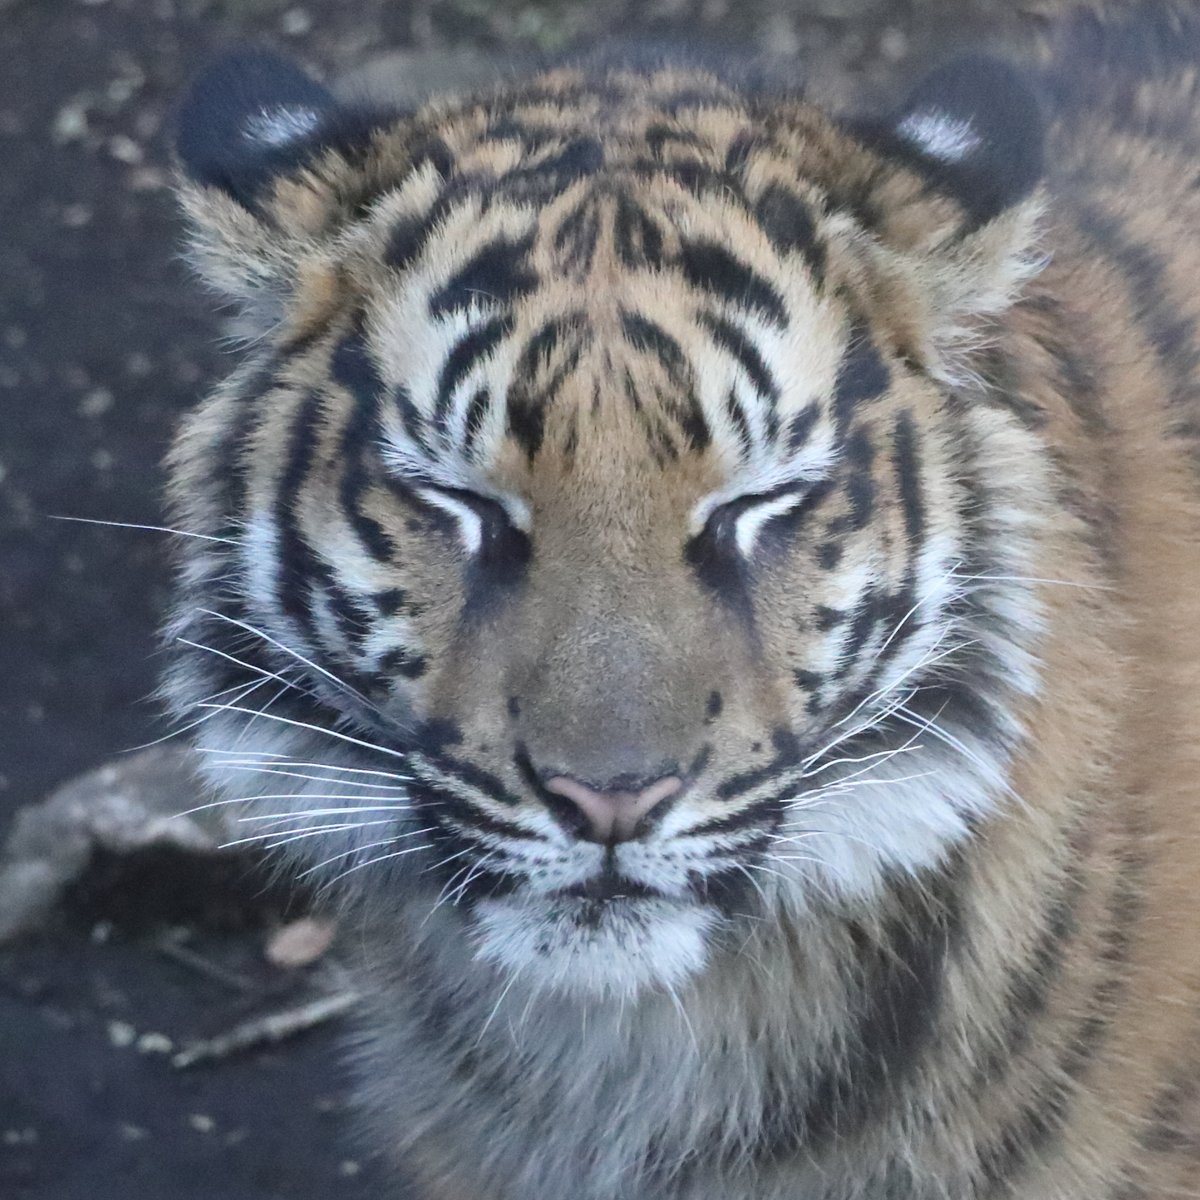 アサちゃんの表情の変化が好きです。

#Sumatrantiger  #tiger #bigcat #スマトラトラ #上野動物園 #アサ